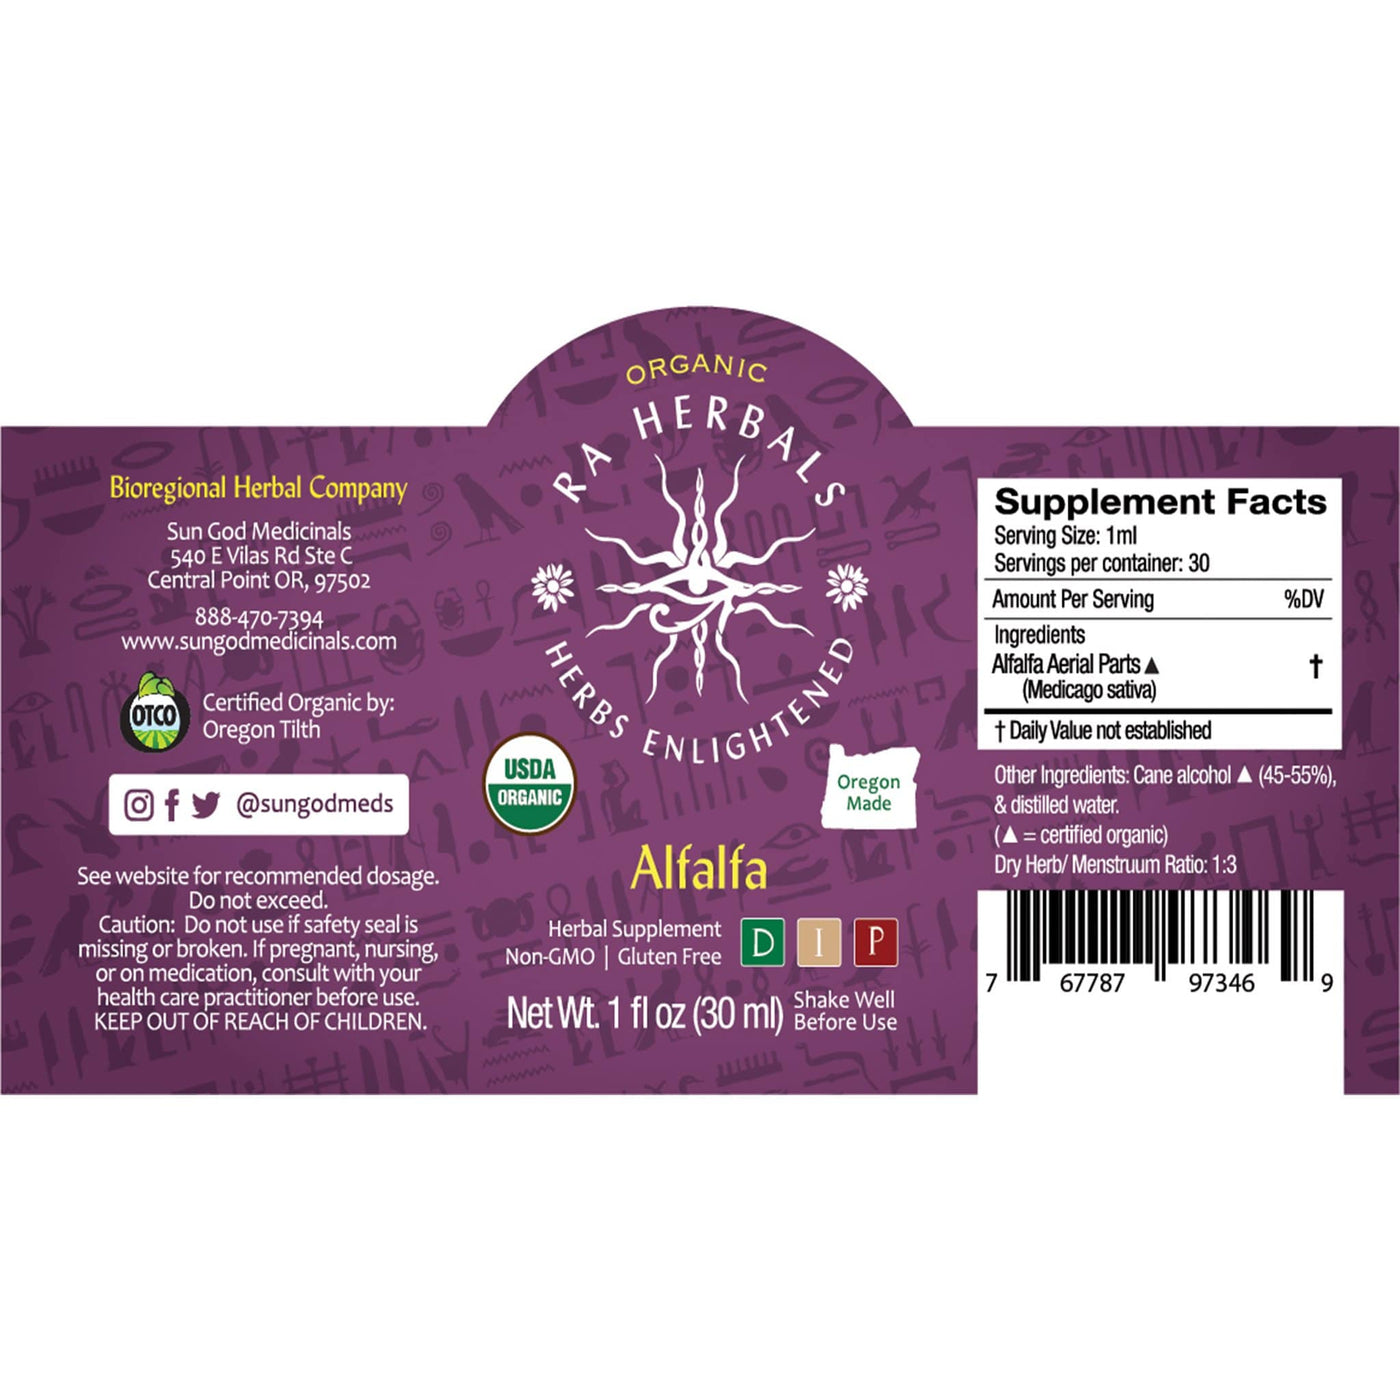 Ra Herbals Certified Organic Alfalfa Tincture - Sun God Medicinals